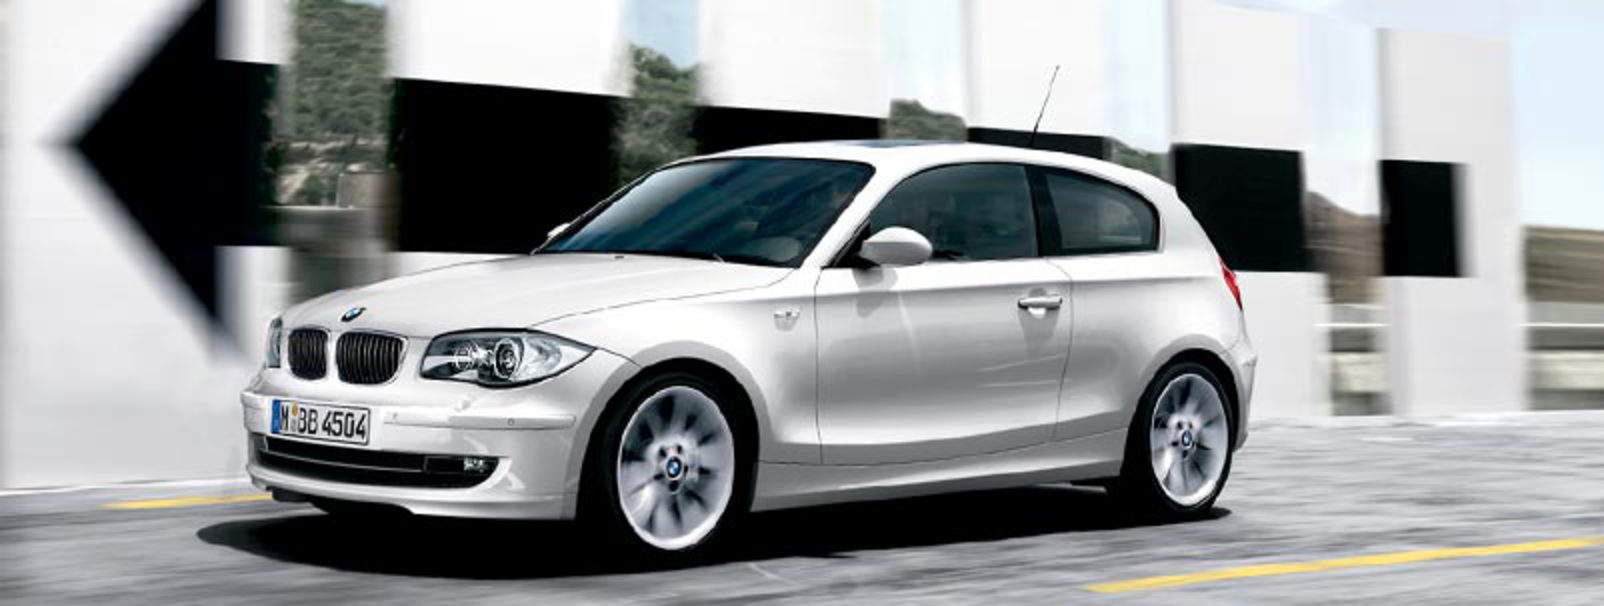 La BMW 130i offre cinq nouvelles fonctions DSC: